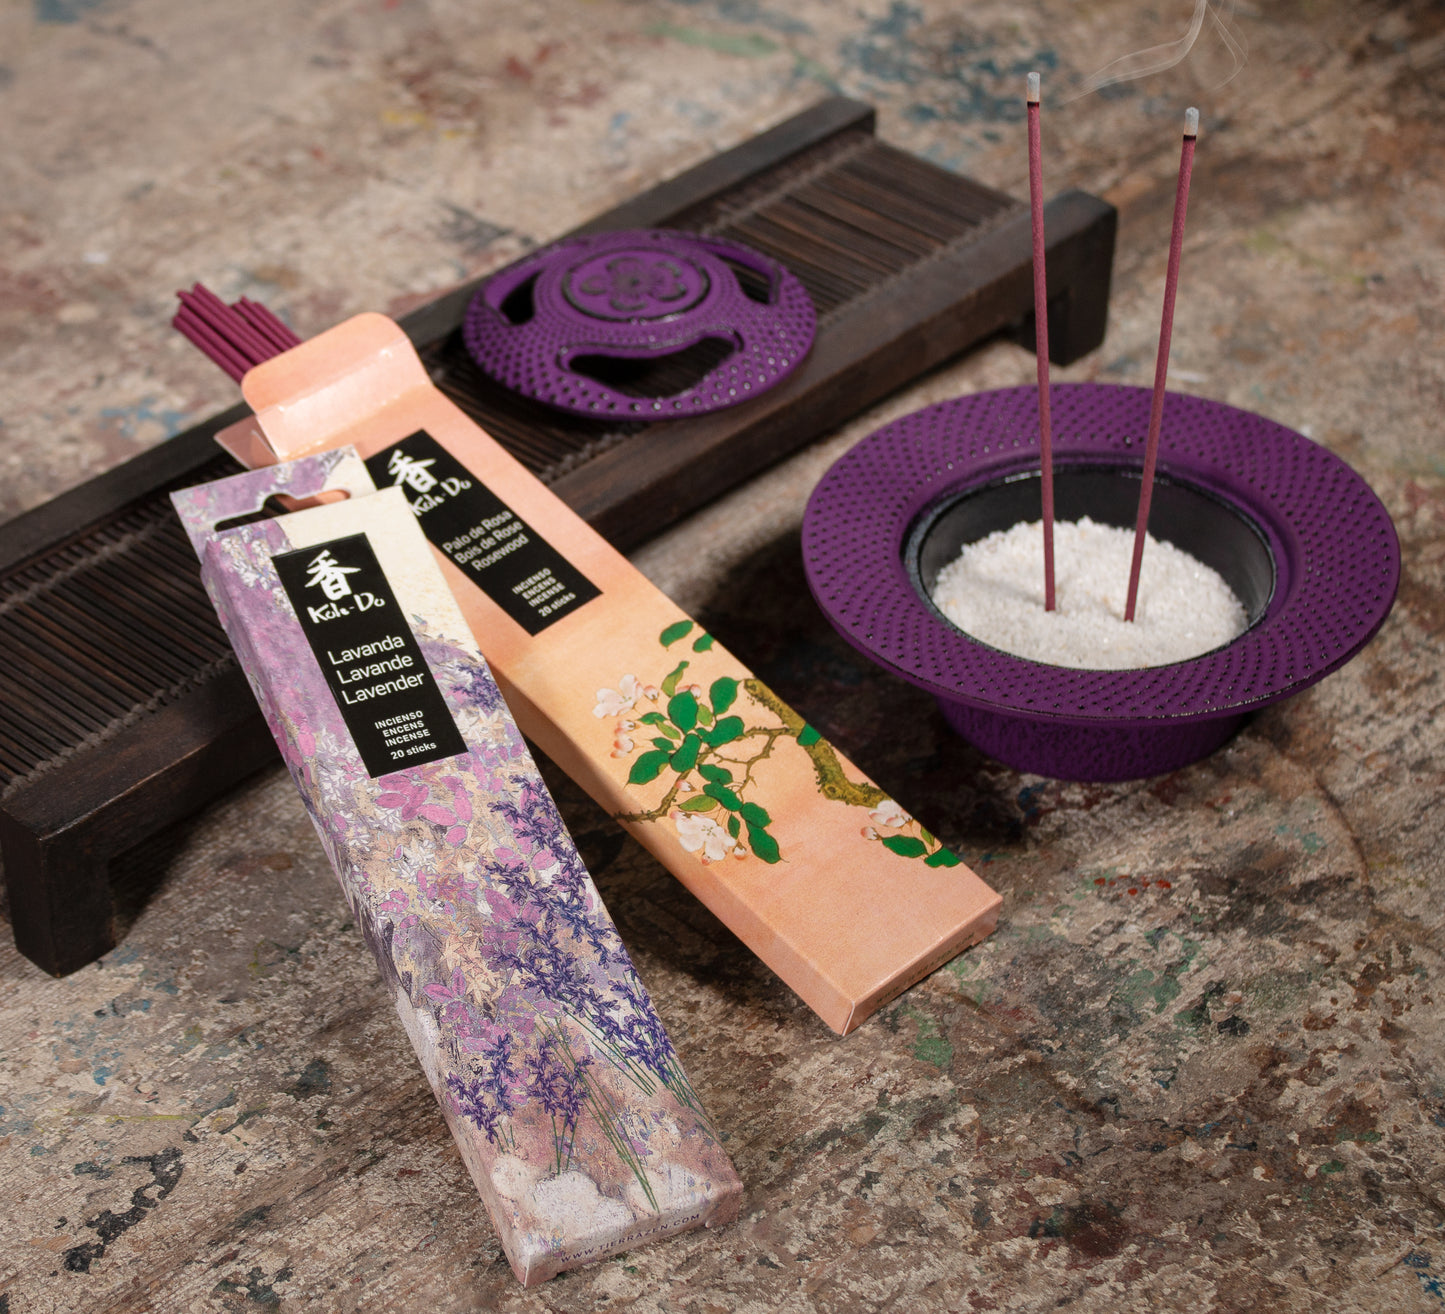 Koh Do Incense - Lavender